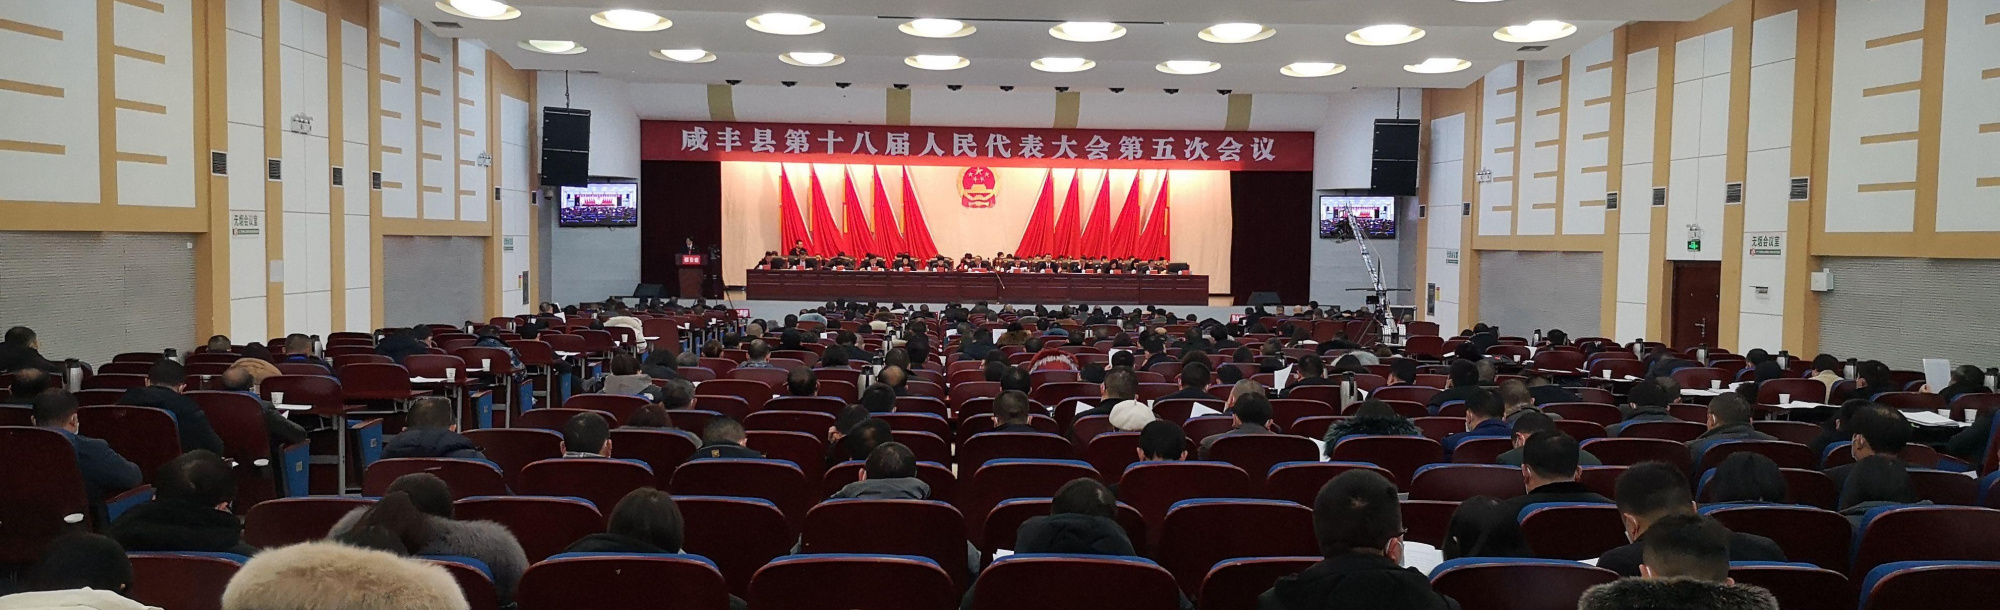 快讯:咸丰县第十八届人民代表大会第五次会议开幕